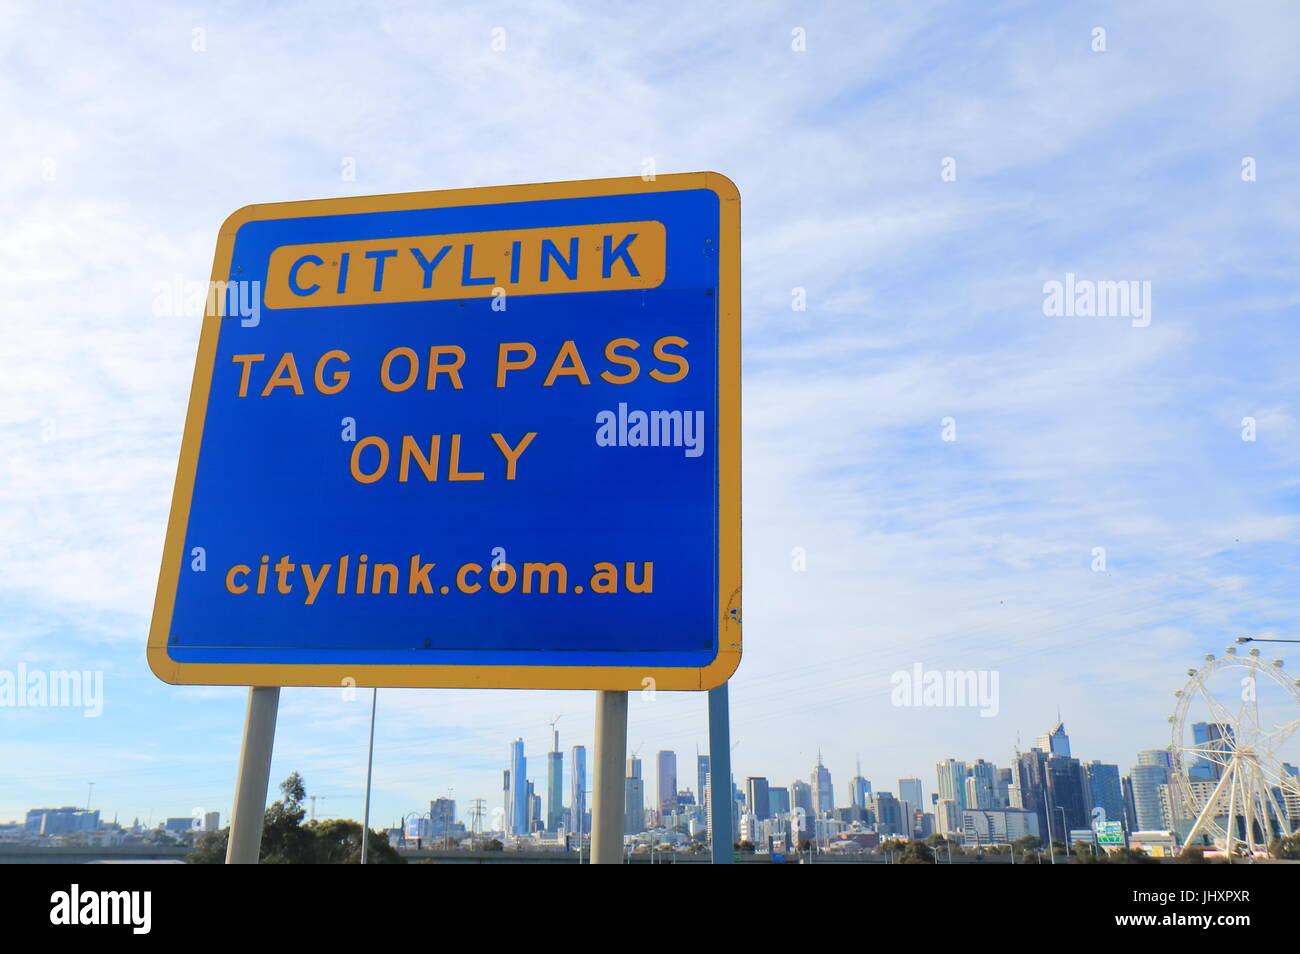 Panneau d'entrée d'autoroute Citylink à Melbourne en Australie. Citylink relie l'aéroport de Melbourne et le centre-ville de Melbourne. Banque D'Images